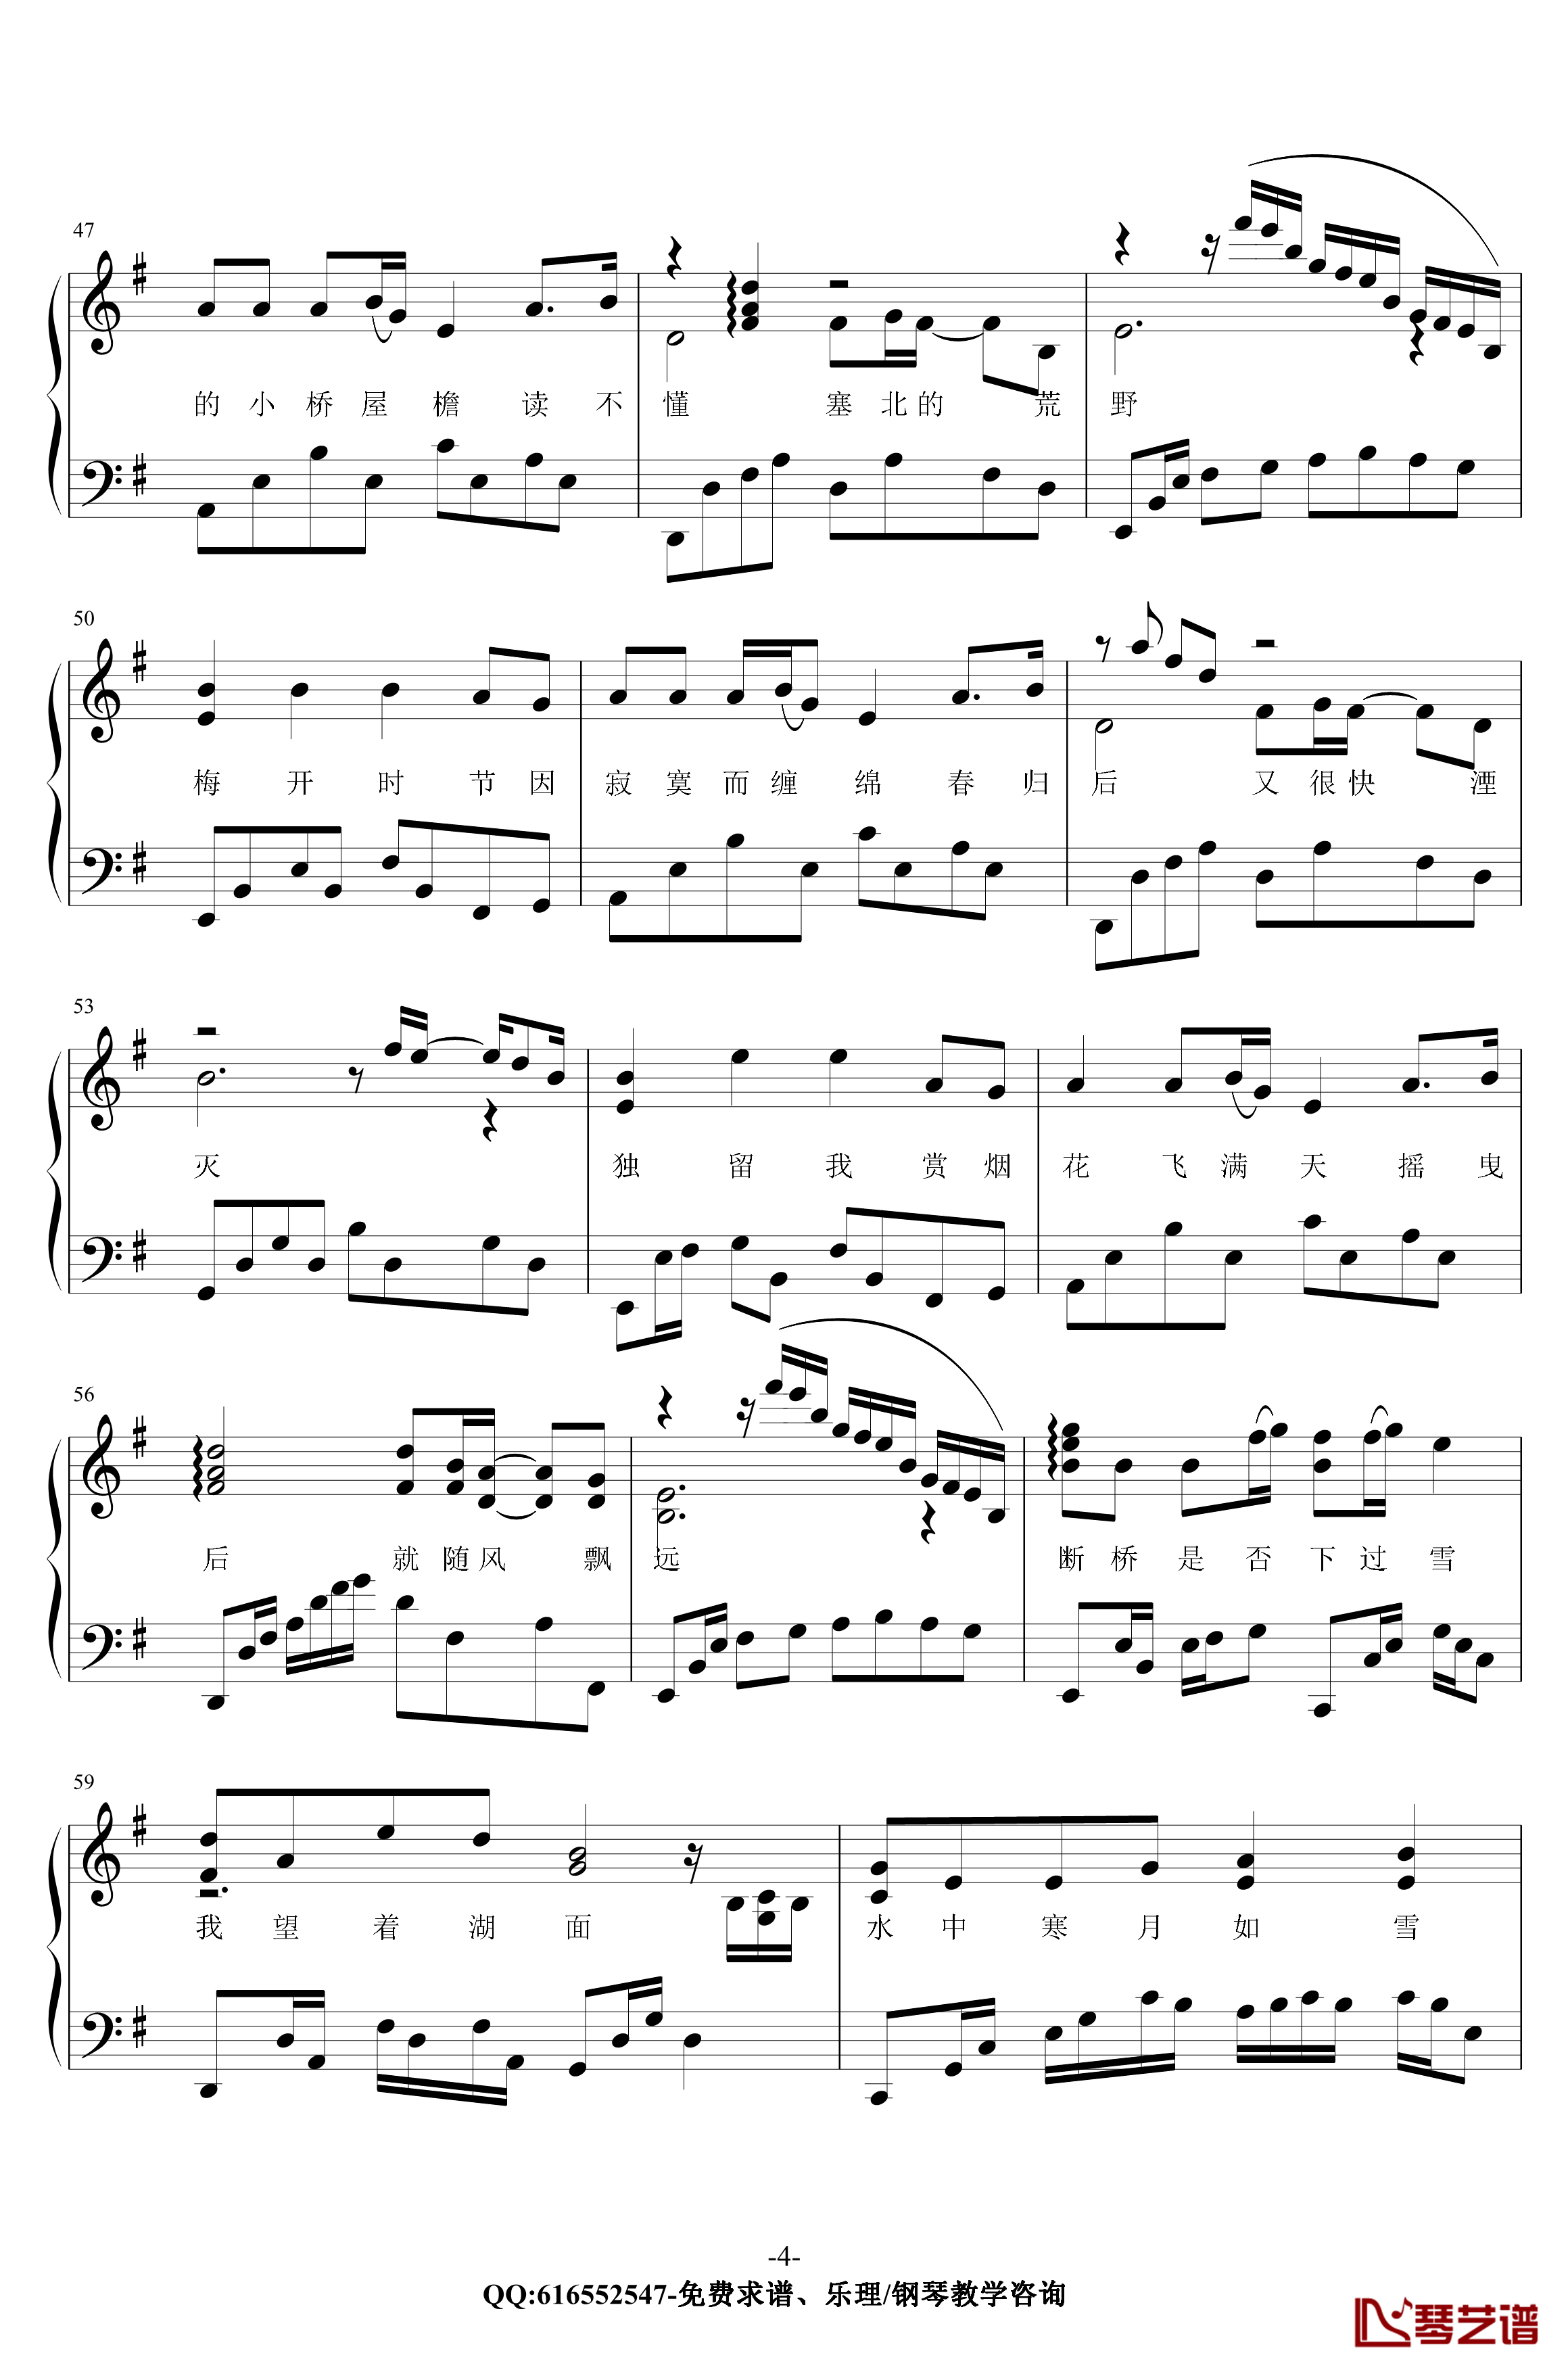 断桥残雪钢琴谱-金老师原声独奏版180117-许嵩4